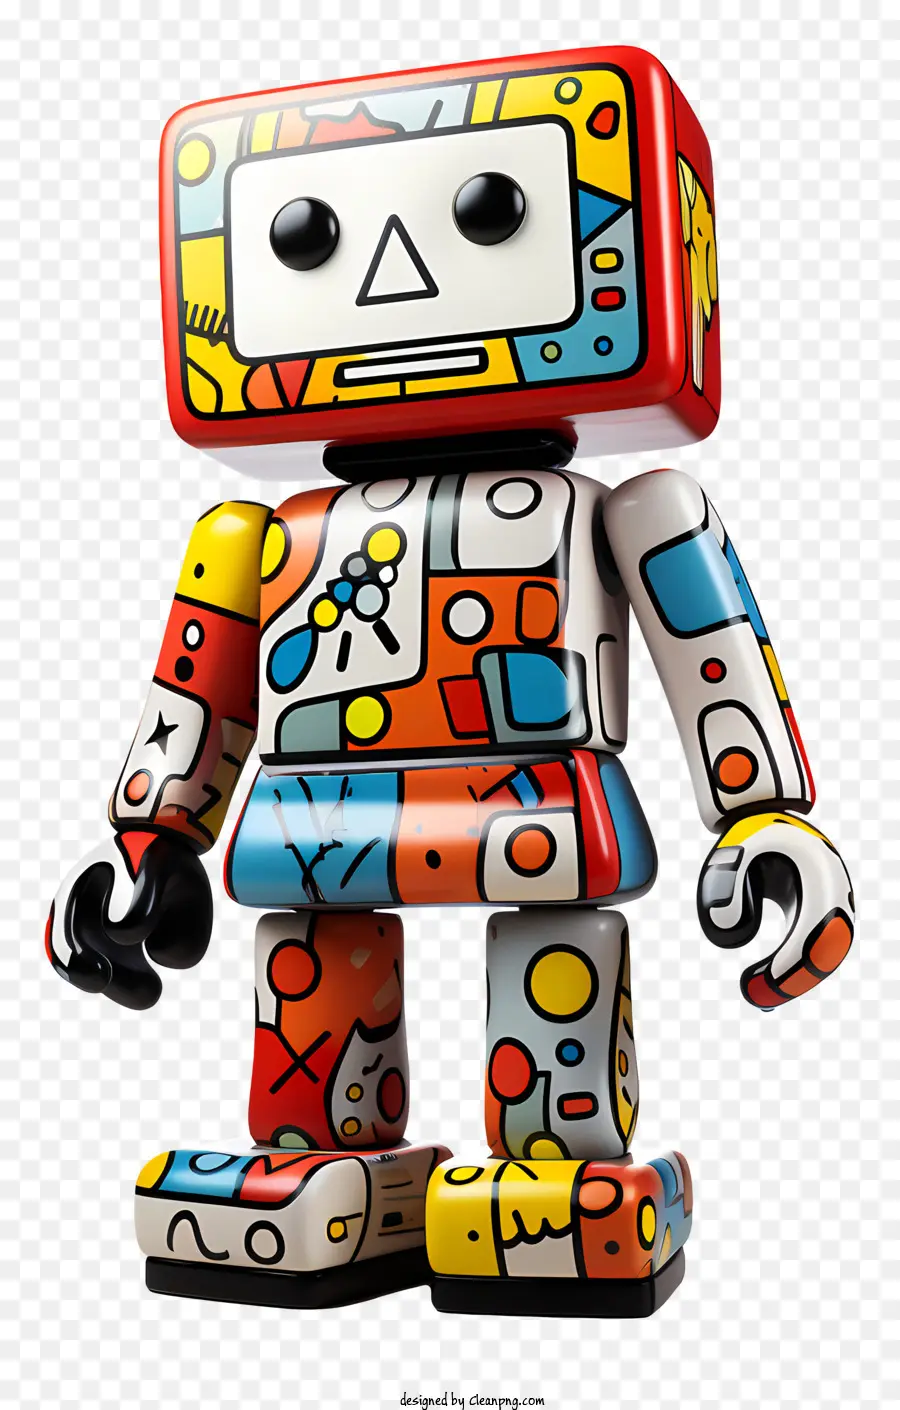 geometrische Formen - Farbenfroher, geometrischer Roboter mit erhöhten Armen und geneigtem Kopf